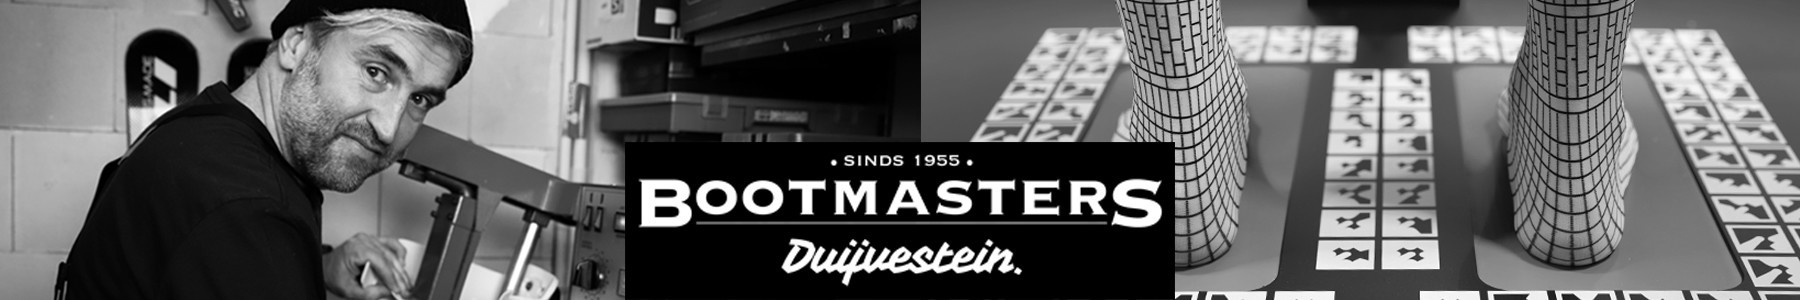 Bootmasters website header